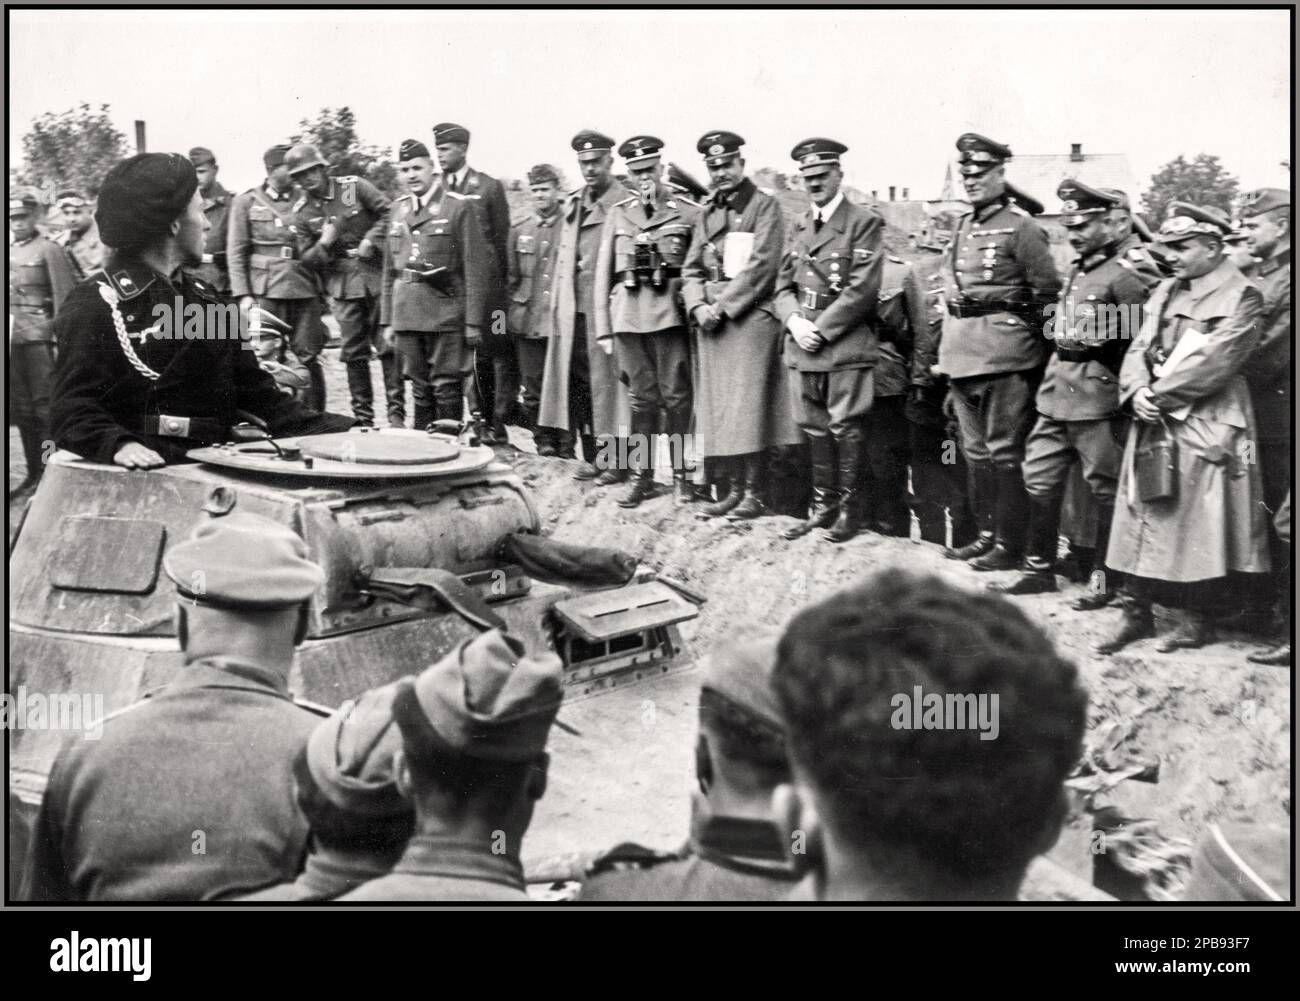 INVASIONE NAZISTA DELLA POLONIA Visita di Adolf Hitler ai corpi corazzati del generale Heinz Guderian del 19th all'inizio della seconda guerra mondiale, Guderian guidò un corpo corazzato nell'invasione della Polonia. Sfilata di truppe. Hitler (4th da destra) guarda un Panzer Tank Commander nel suo carro armato 'PzKpfw i'. Visibile anche: Generale Heinz Guderian (5th da destra) e Heinrich Himmler (7th da destra) raffigurava persone Heinz Guderian, Heinrich Himmler, Adolf Hitler campo Marshall Wilhelm Keitel Data settembre 1939 Foto Stock